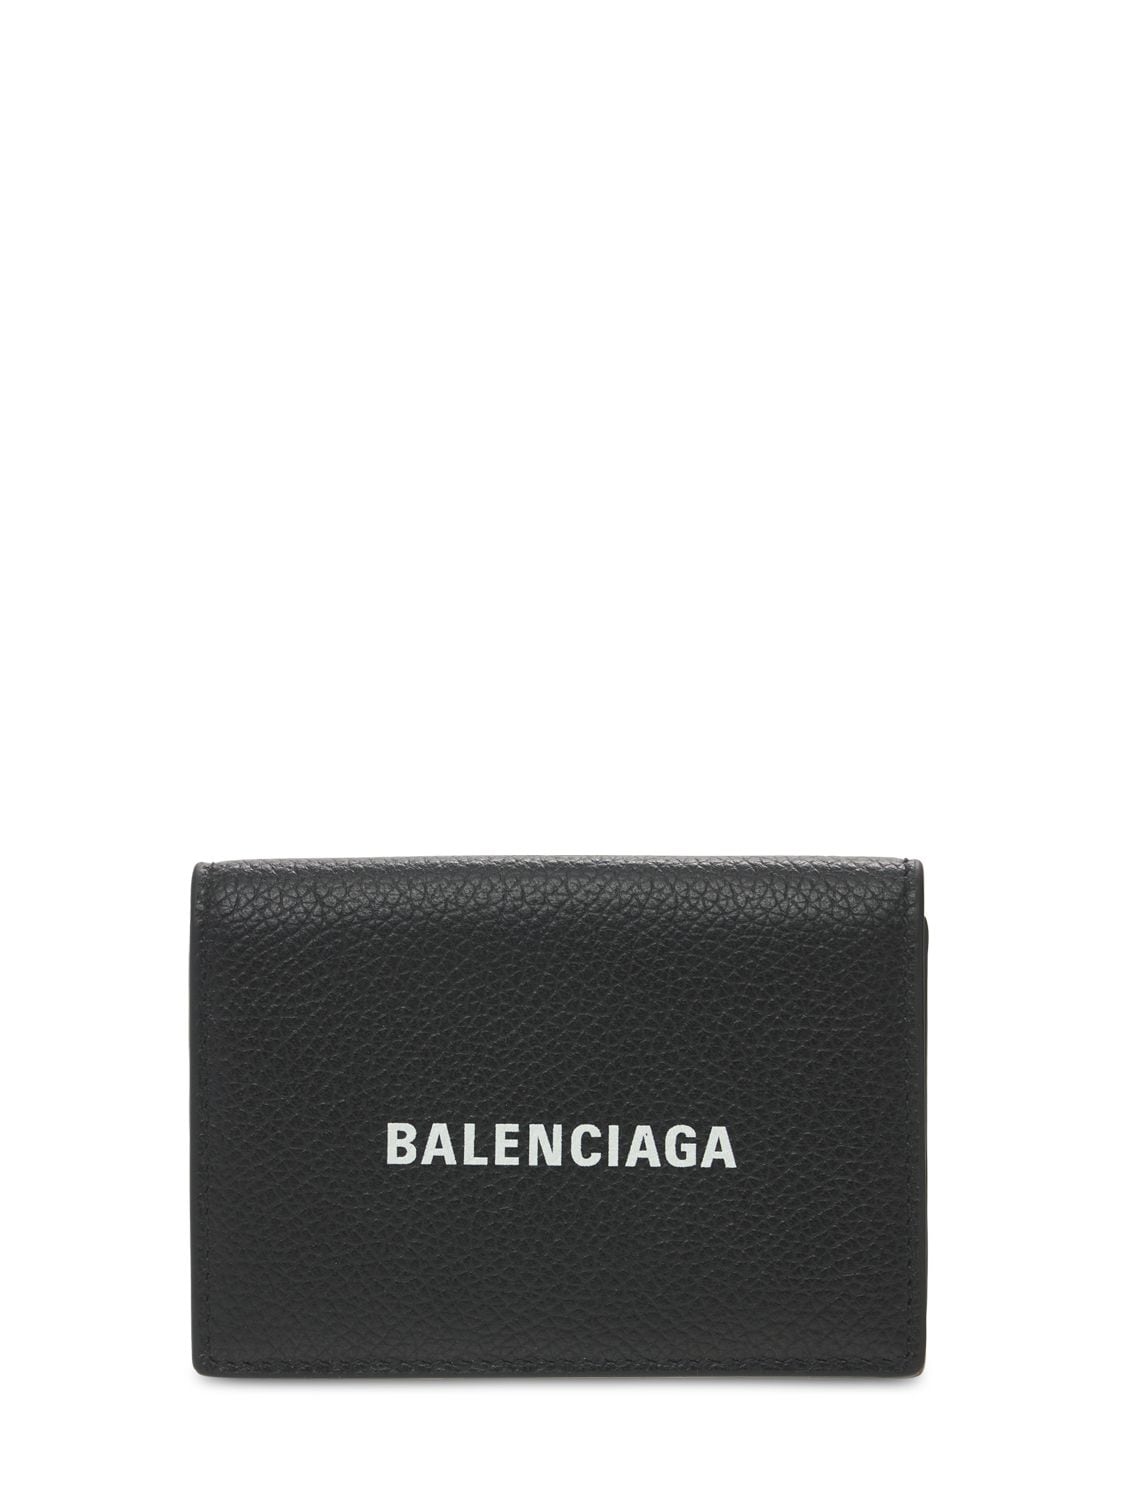 Balenciaga Logo Leather Wallet In Black